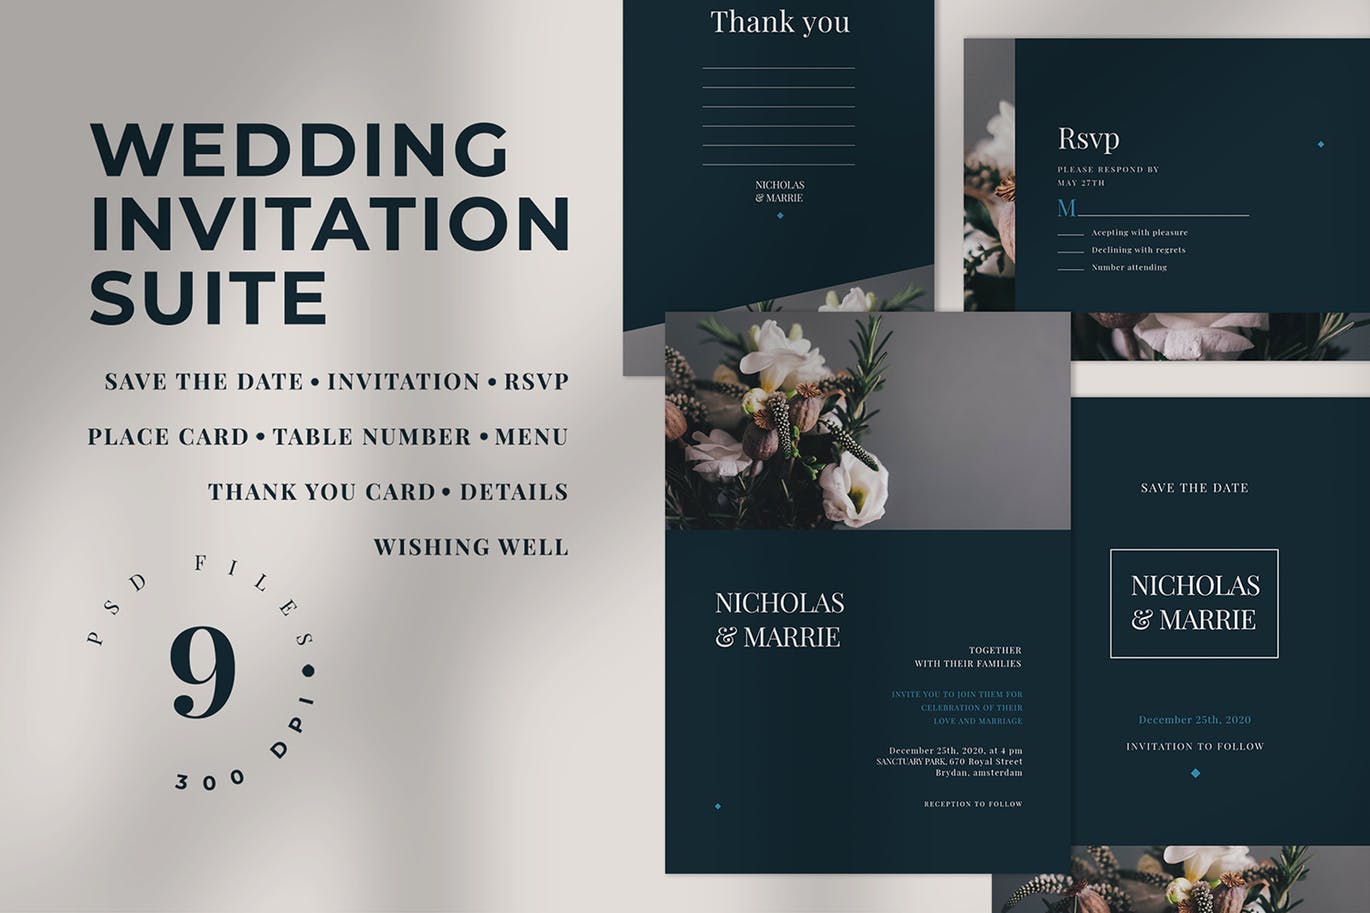 现代轻奢风格婚礼邀请设计素材 Wedding Invitation Suite插图(1)